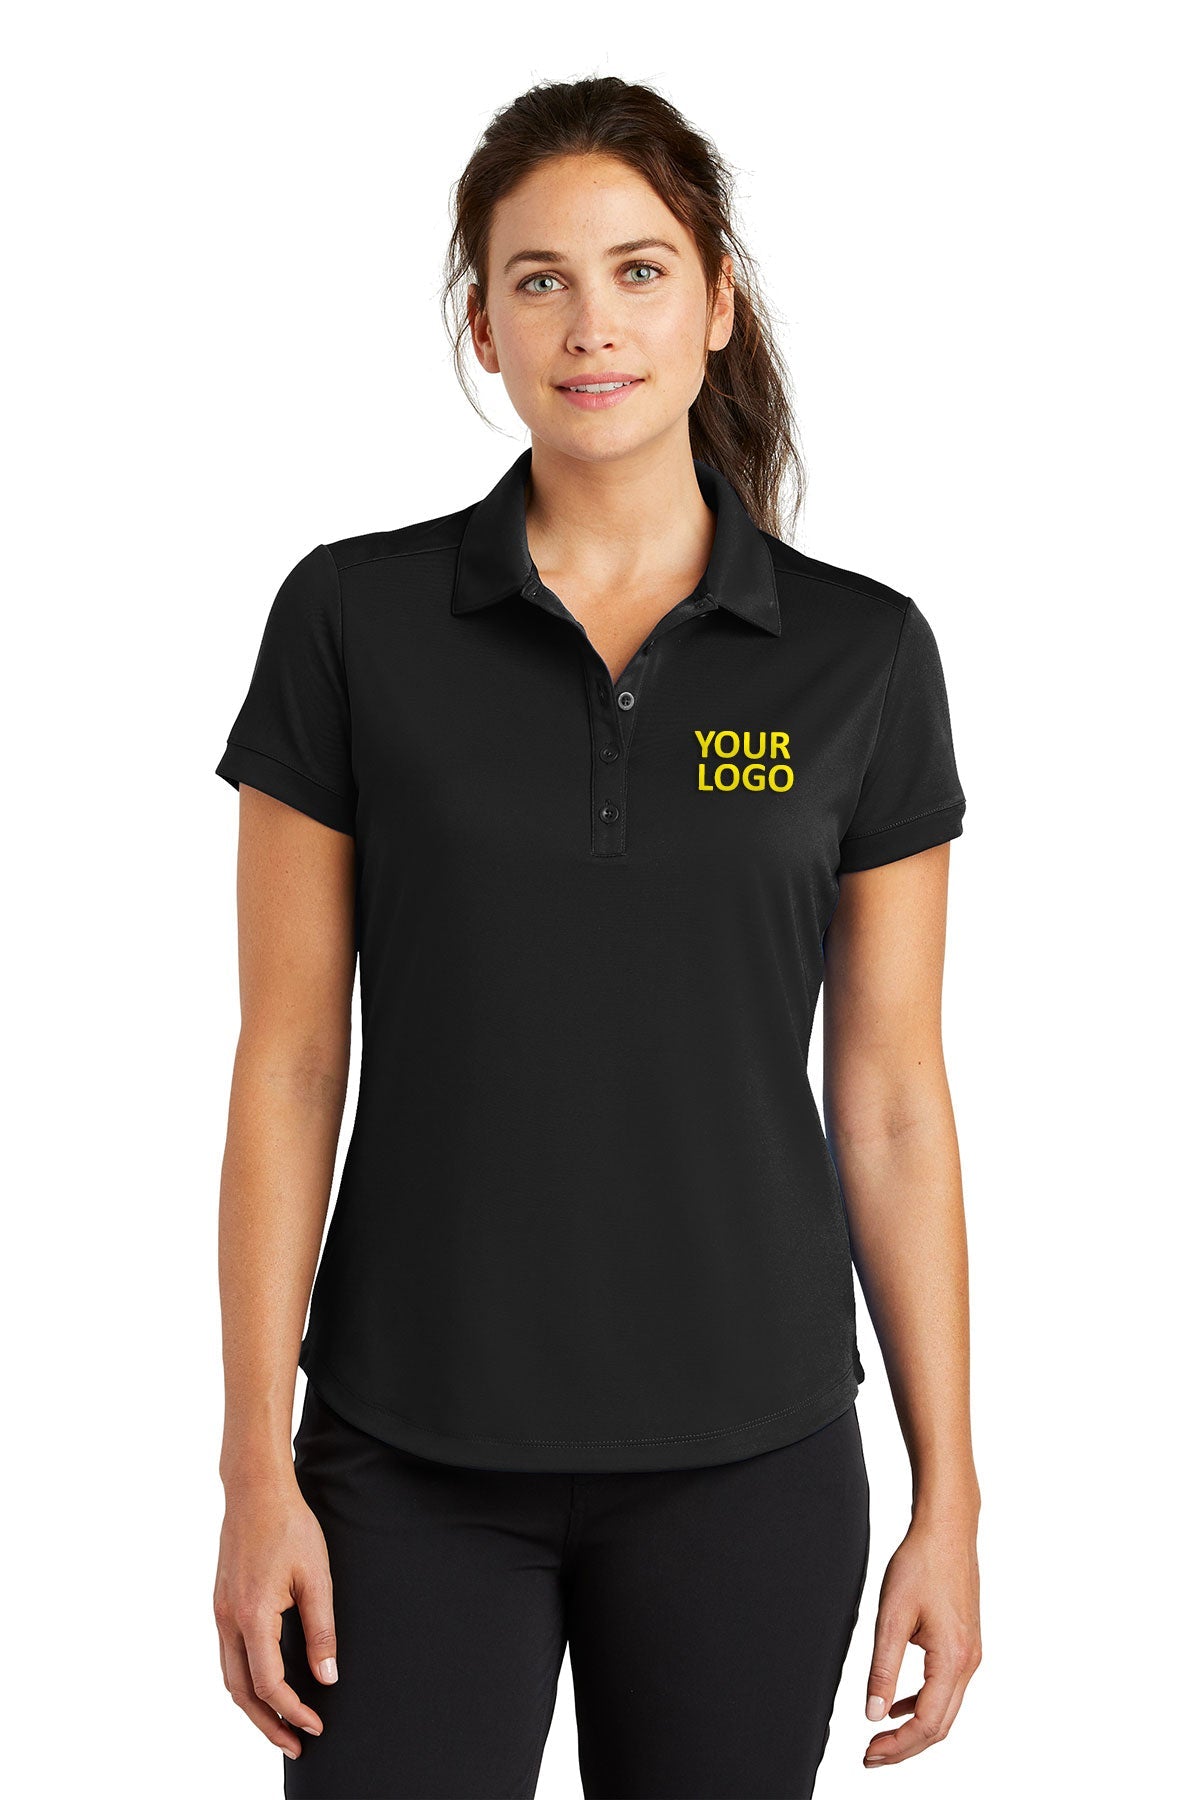 nike black 811807 custom company polo shirts